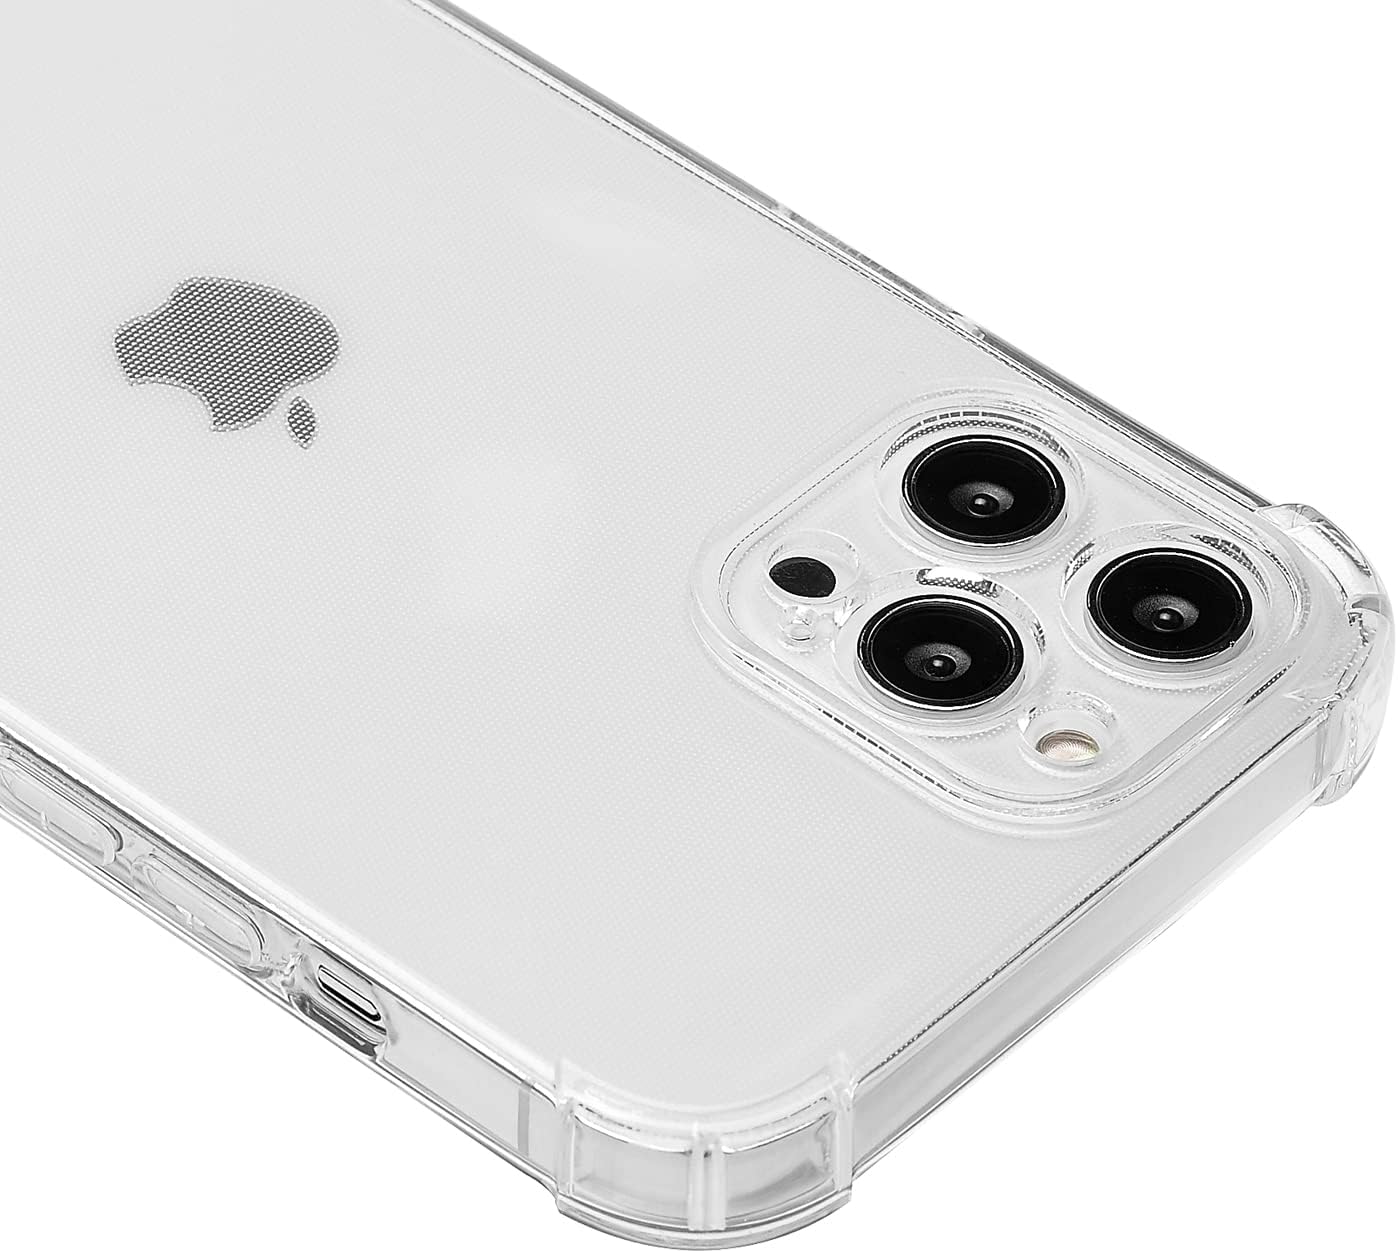 Carcasa antichoque  iPhone 12 iPhone 12 Pro  Flexigel  protección lente